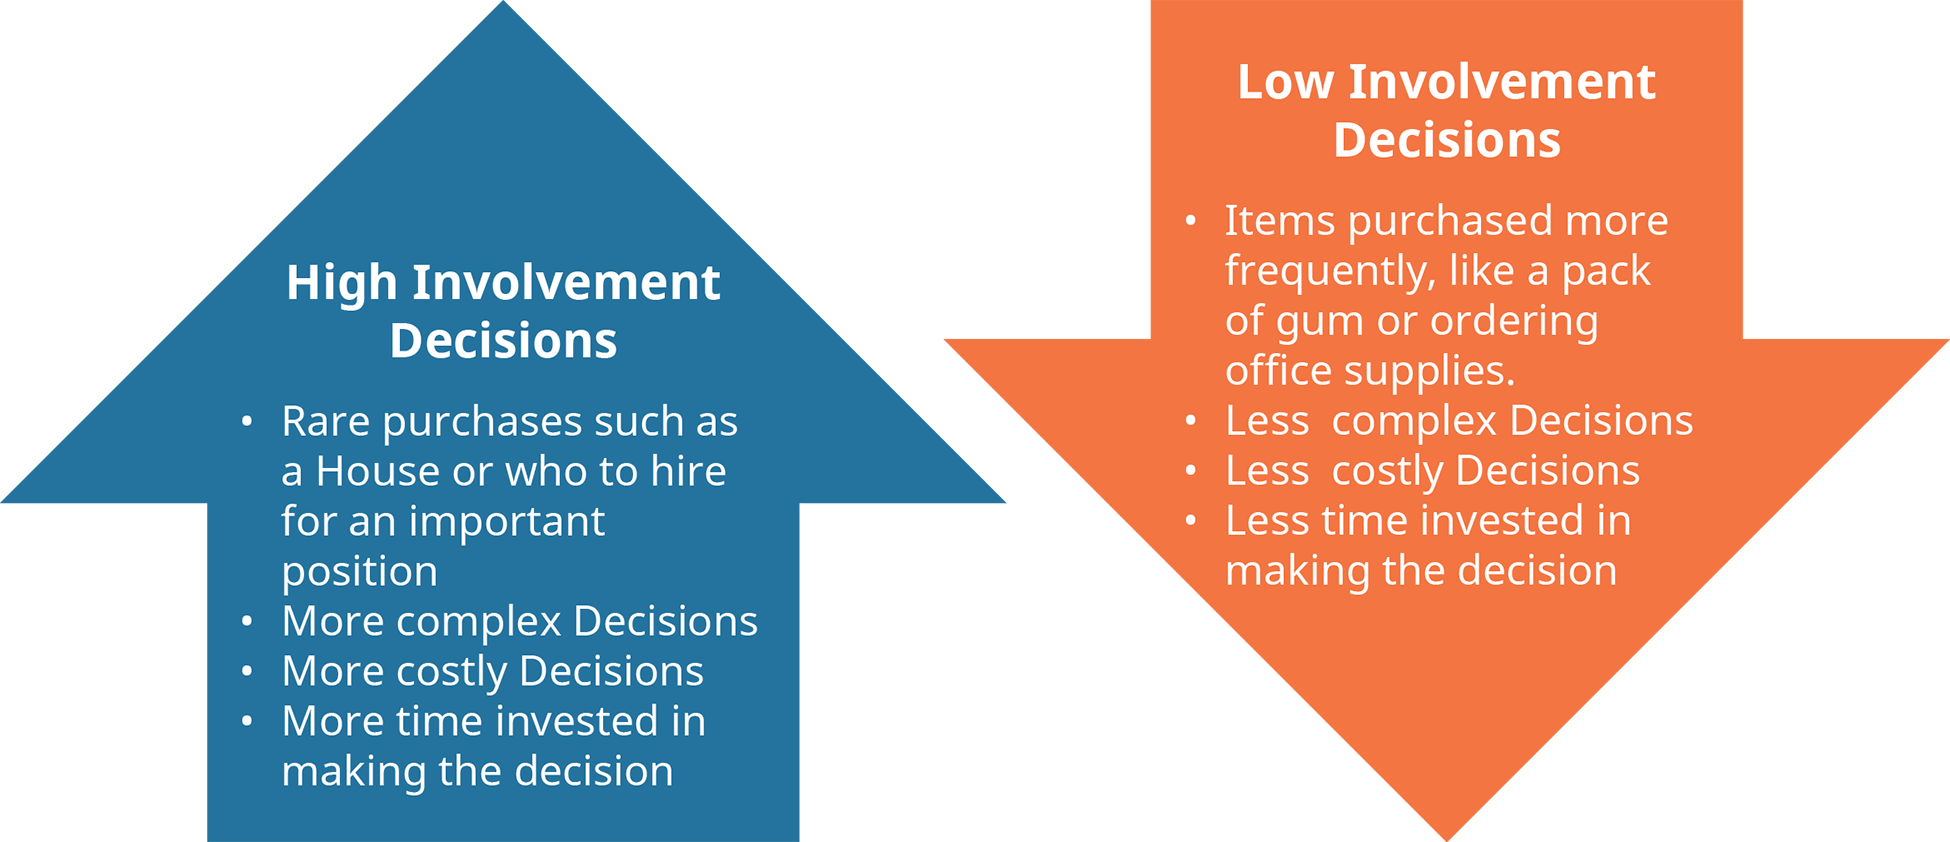 Un diagrama ilustra las diferentes características de las decisiones de alta participación y baja participación.